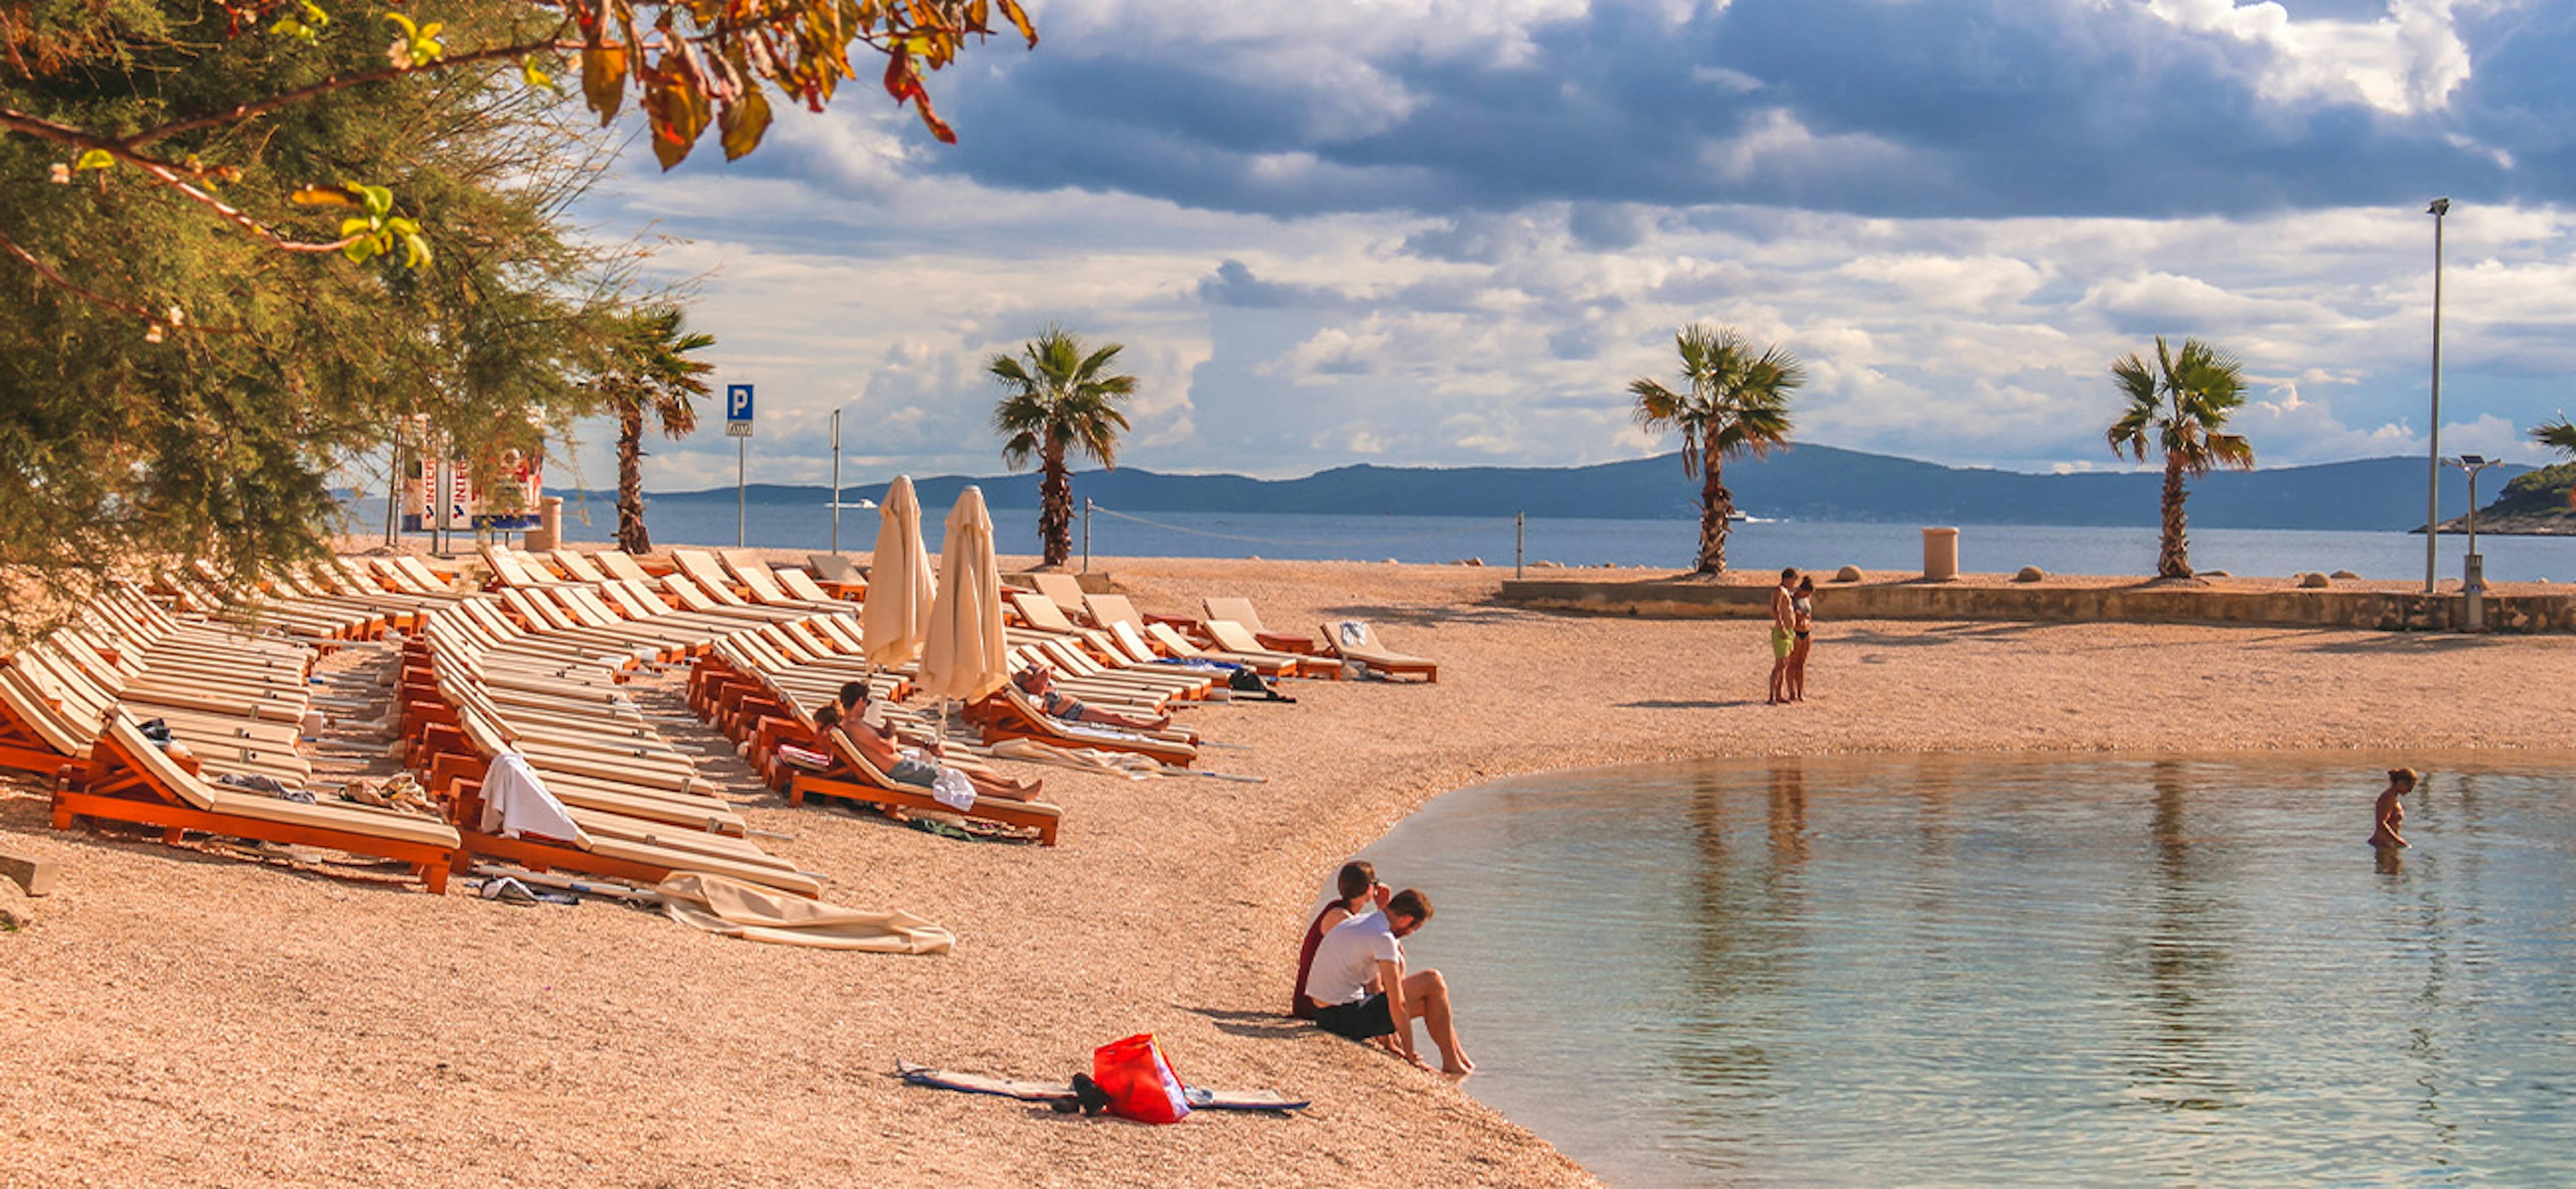 People bathing at the famous Croatian beach Kasuni (Croatian: Plaa Kasjuni), by the Adriatic Sea, in Split, Croatia.